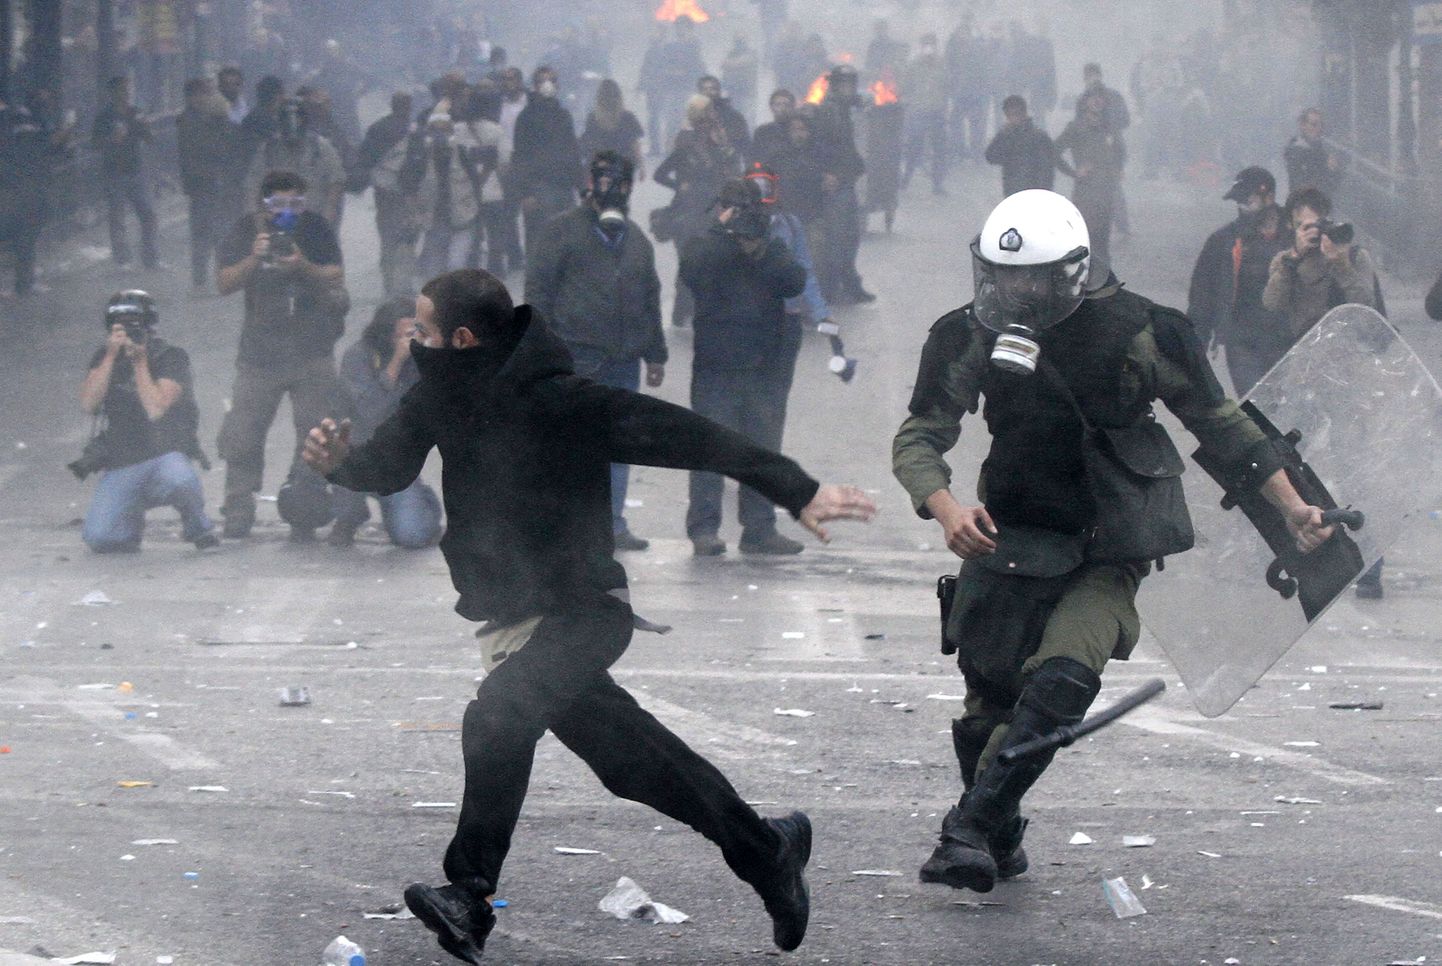 Kreeka ametiühingute kärpekavade vastane 48-tunnine streik. Meeleavaldused muutusid vägivaldseteks ja vandaalitsevateks.